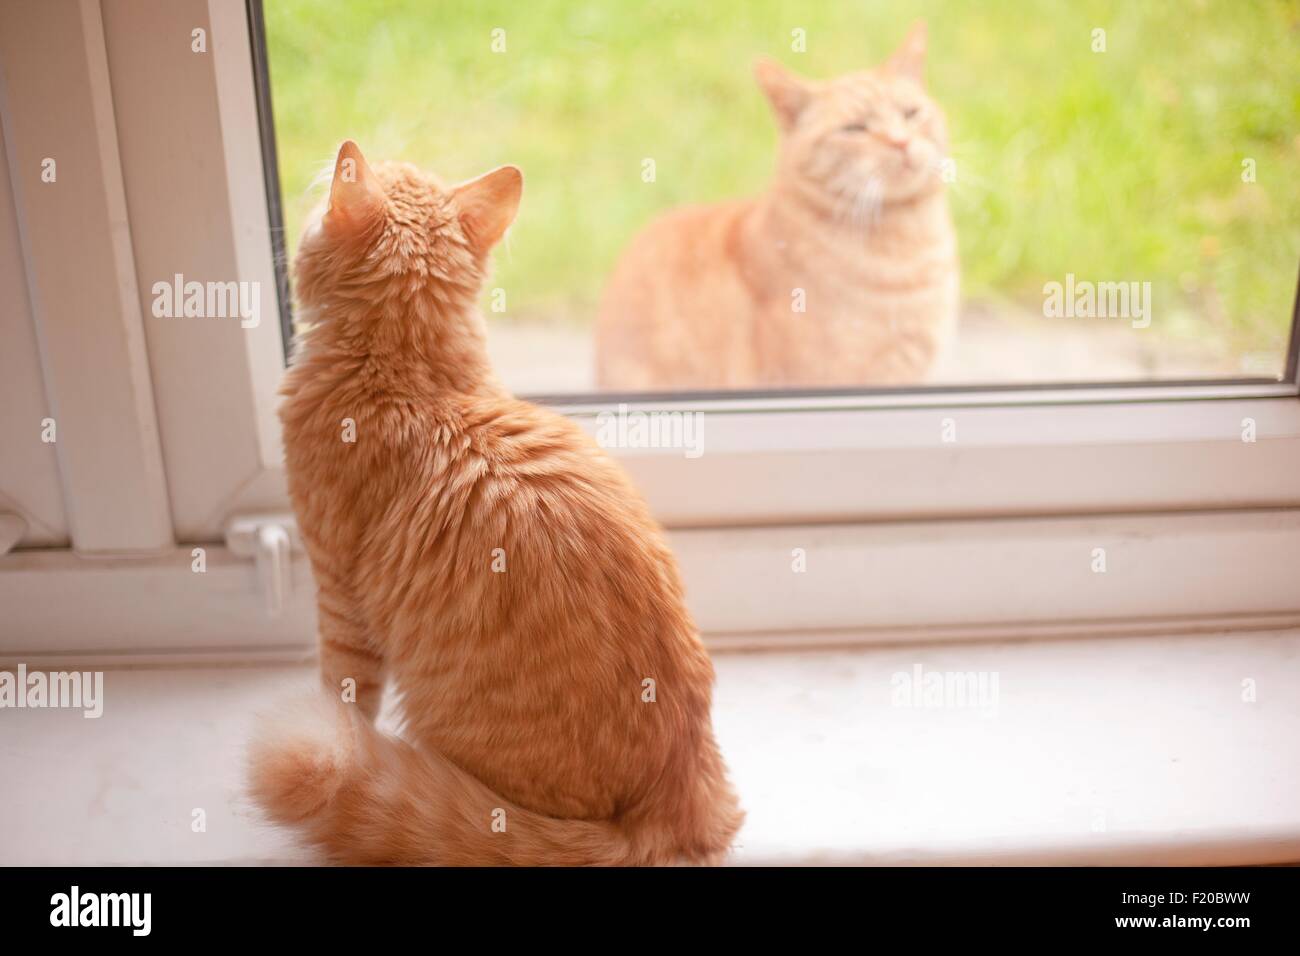 Blick vom Fensterbrett während einer anderen Ingwer Tom Katze in sieht Ingwer-Kater Stockfoto